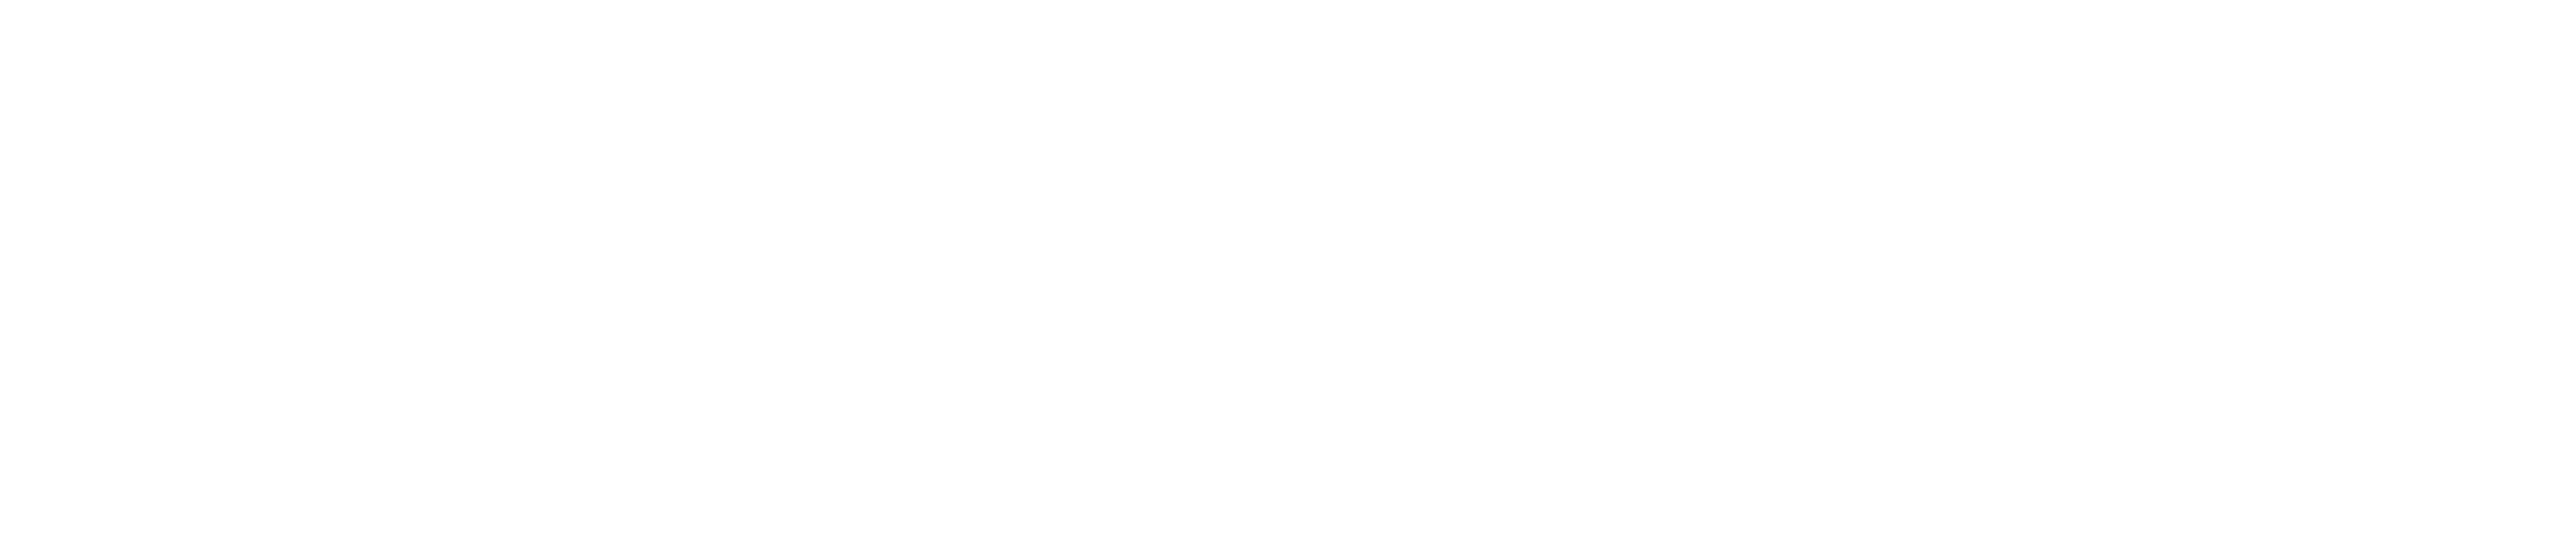 Avarita-logo11